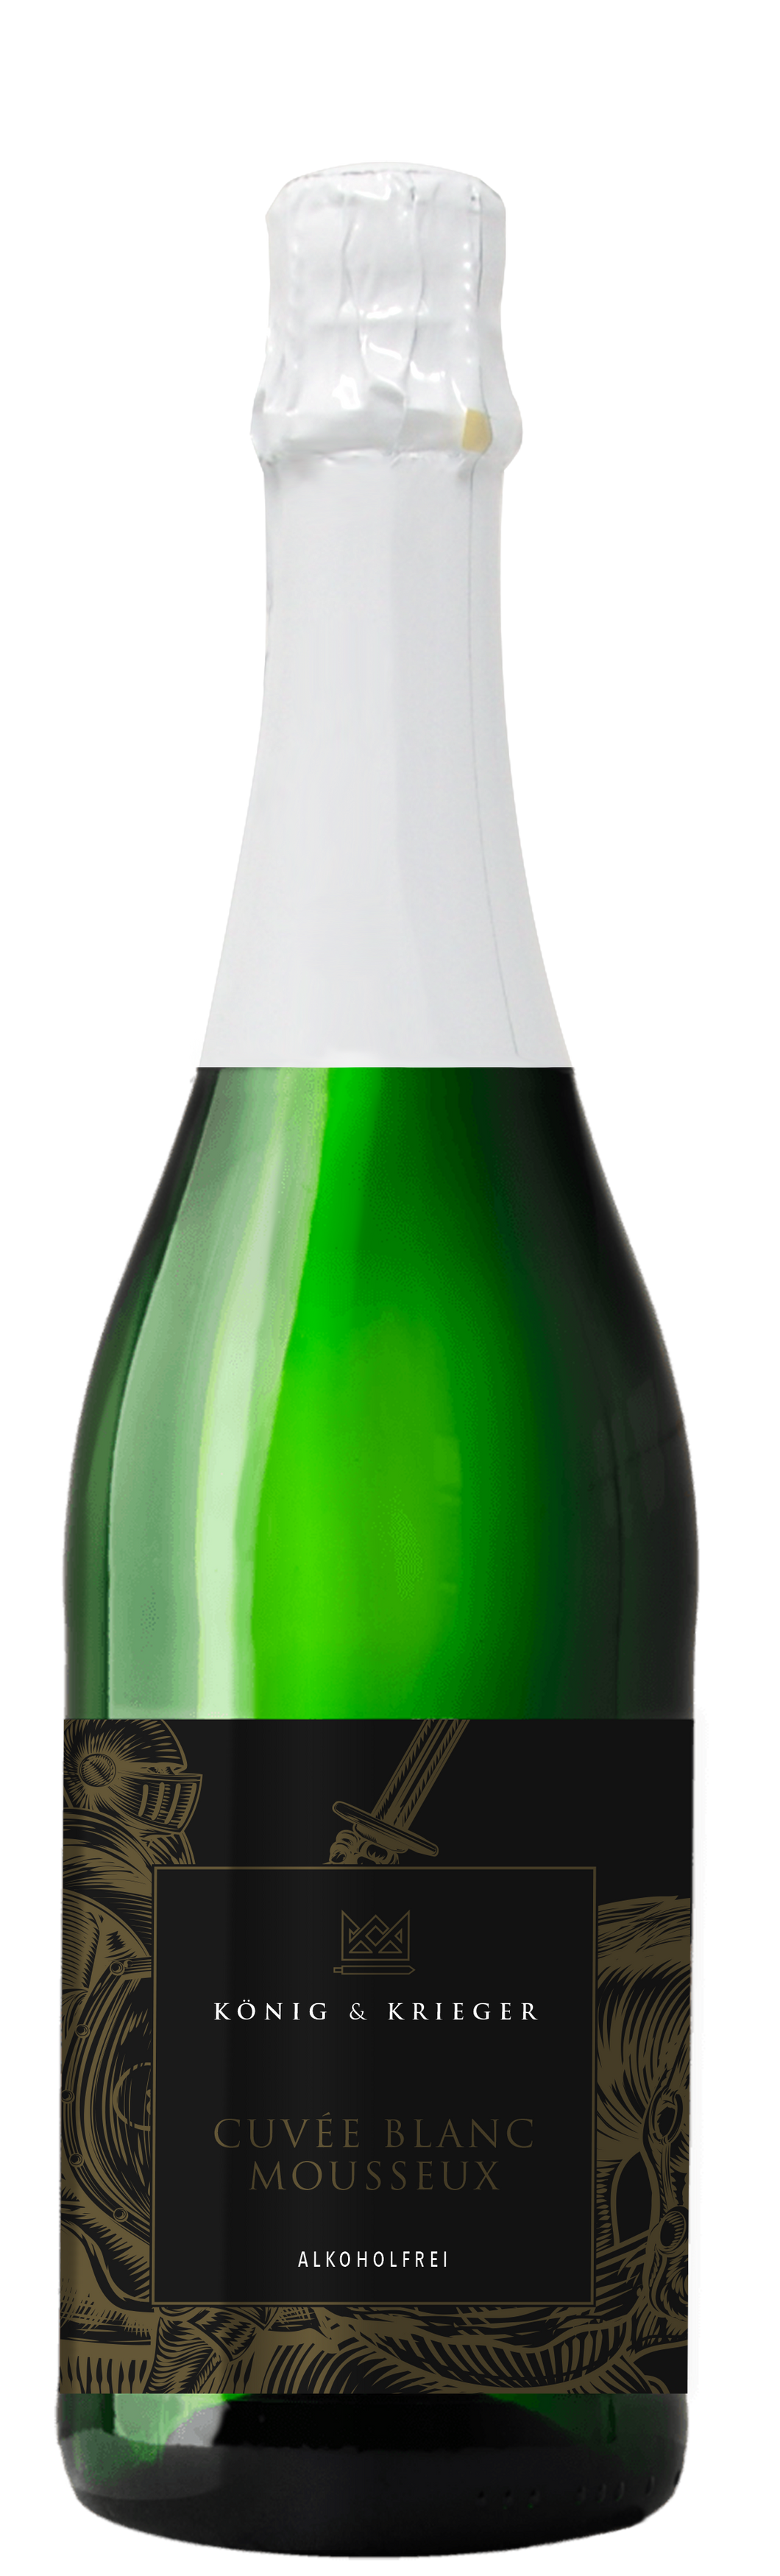 König & Krieger Premium Alkoholfreier Cuvée Blanc Mousseux